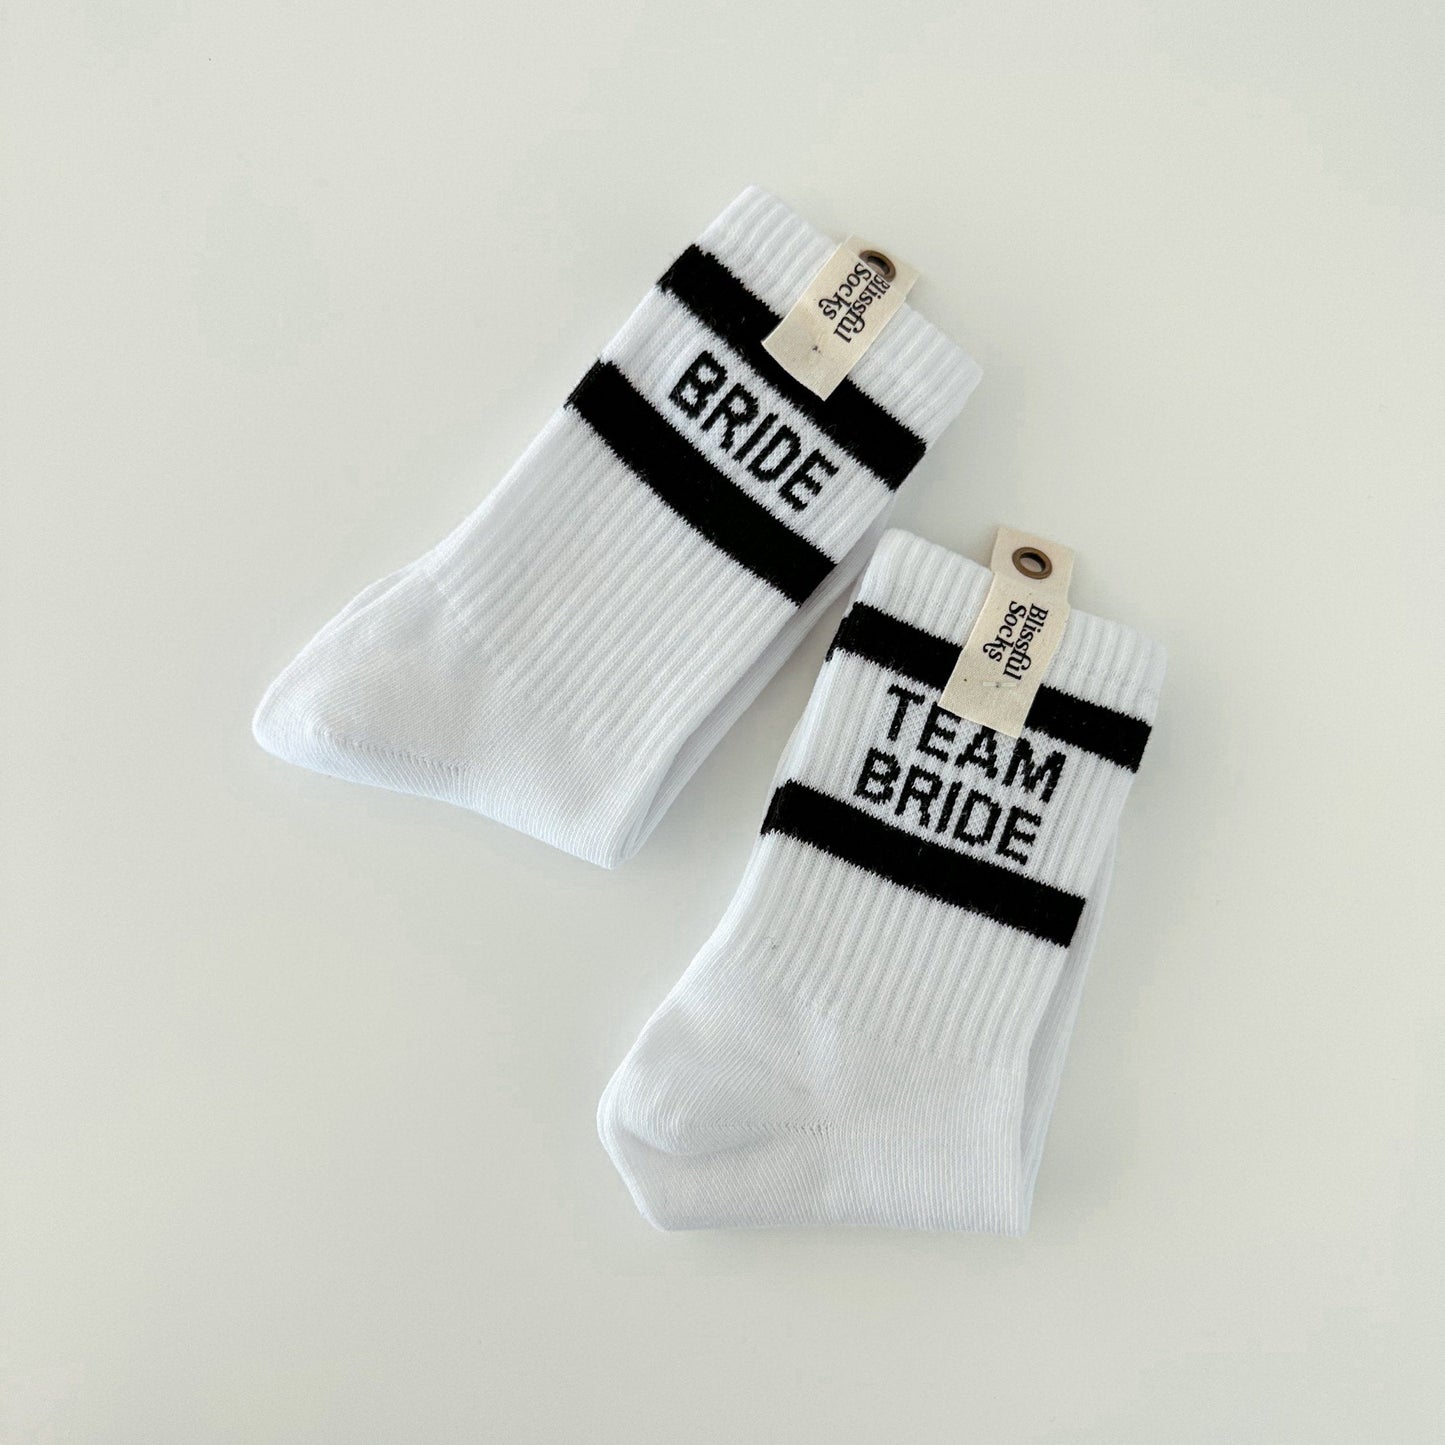 bride-and-team-bride-socks-set-options